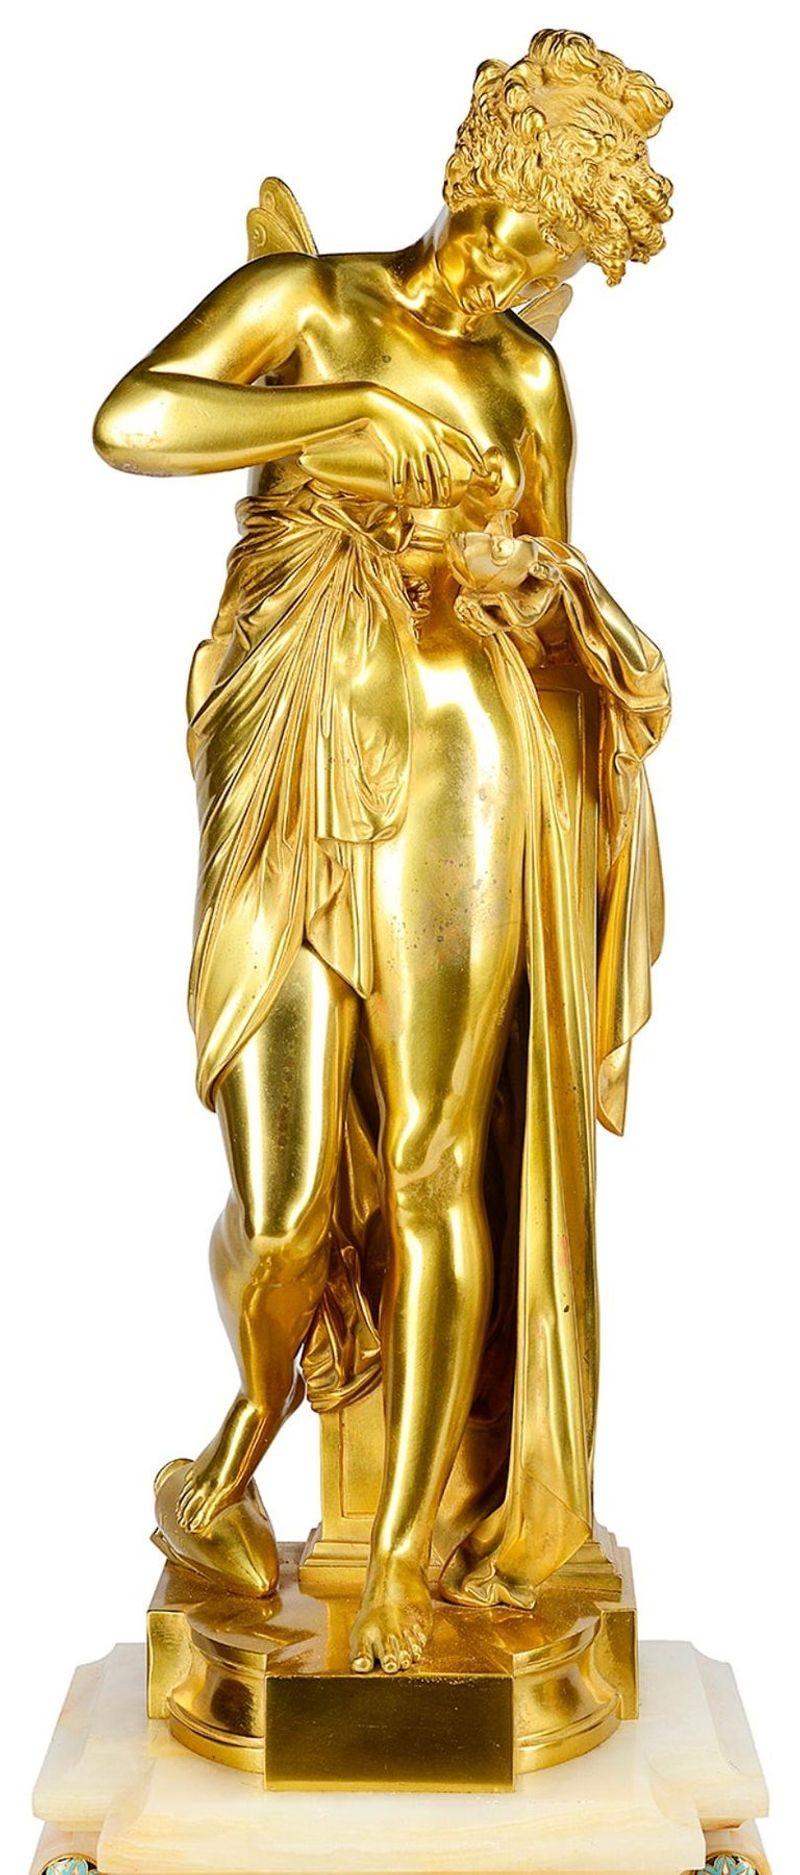 Très belle pendule française du XIXe siècle en bronze doré, émail champlevé et onyx. Whiting une impressionnante paire de candélabres à six branches avec des urnes en onyx blanc, insérées dans des bandes d'émail champlevé. La pendule présente une